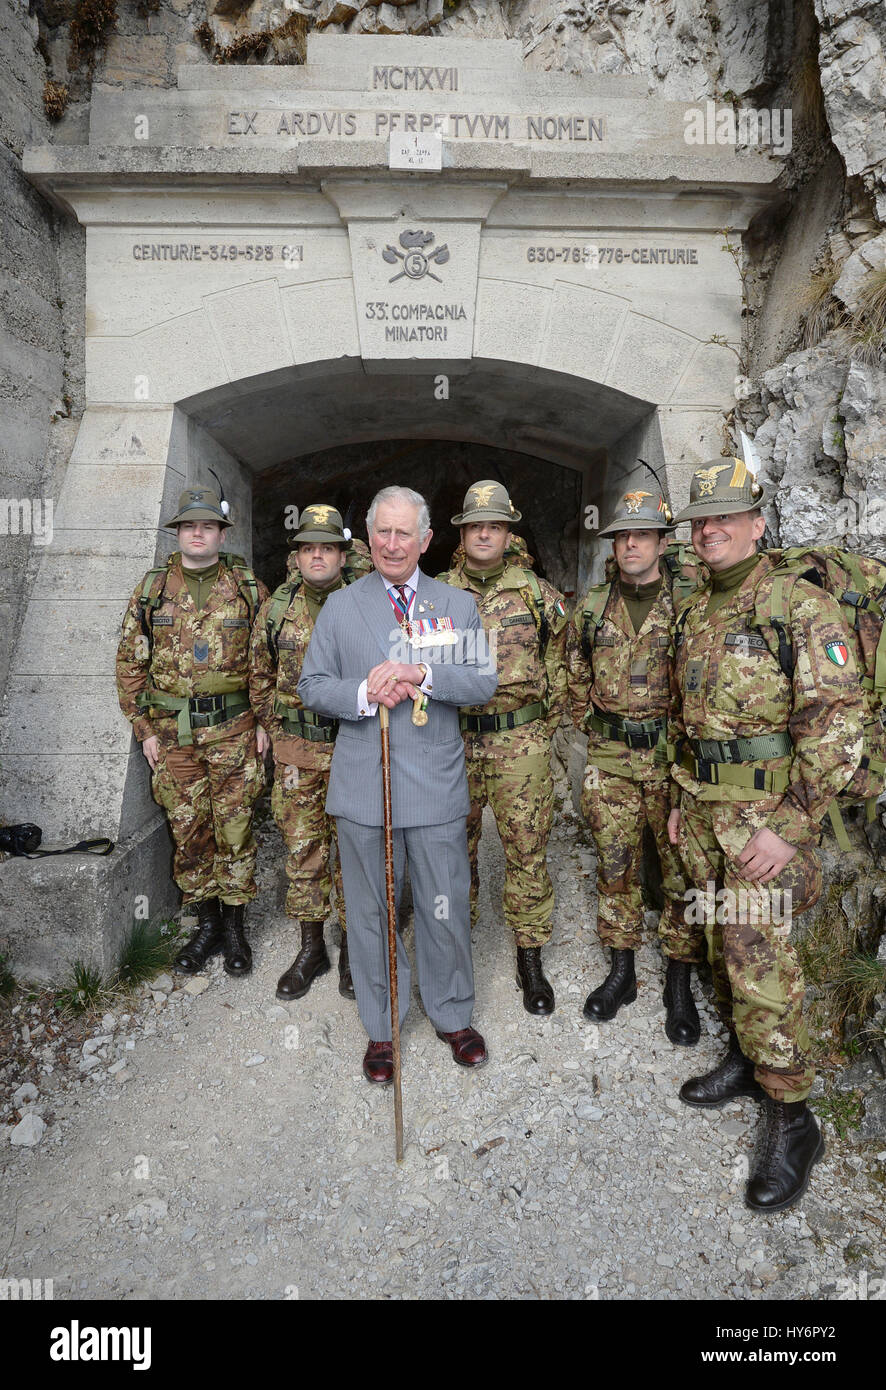 Der Prince Of Wales mit Soldaten aus der italienischen Alpini Berg Kriegsführung Militärkorps am Eingang zu einem Tunnel hoch in den Dolomiten in Norditalien, wo britische Soldaten neben Italienern gegen die Österreicher im ersten Weltkrieg kämpfte. Stockfoto